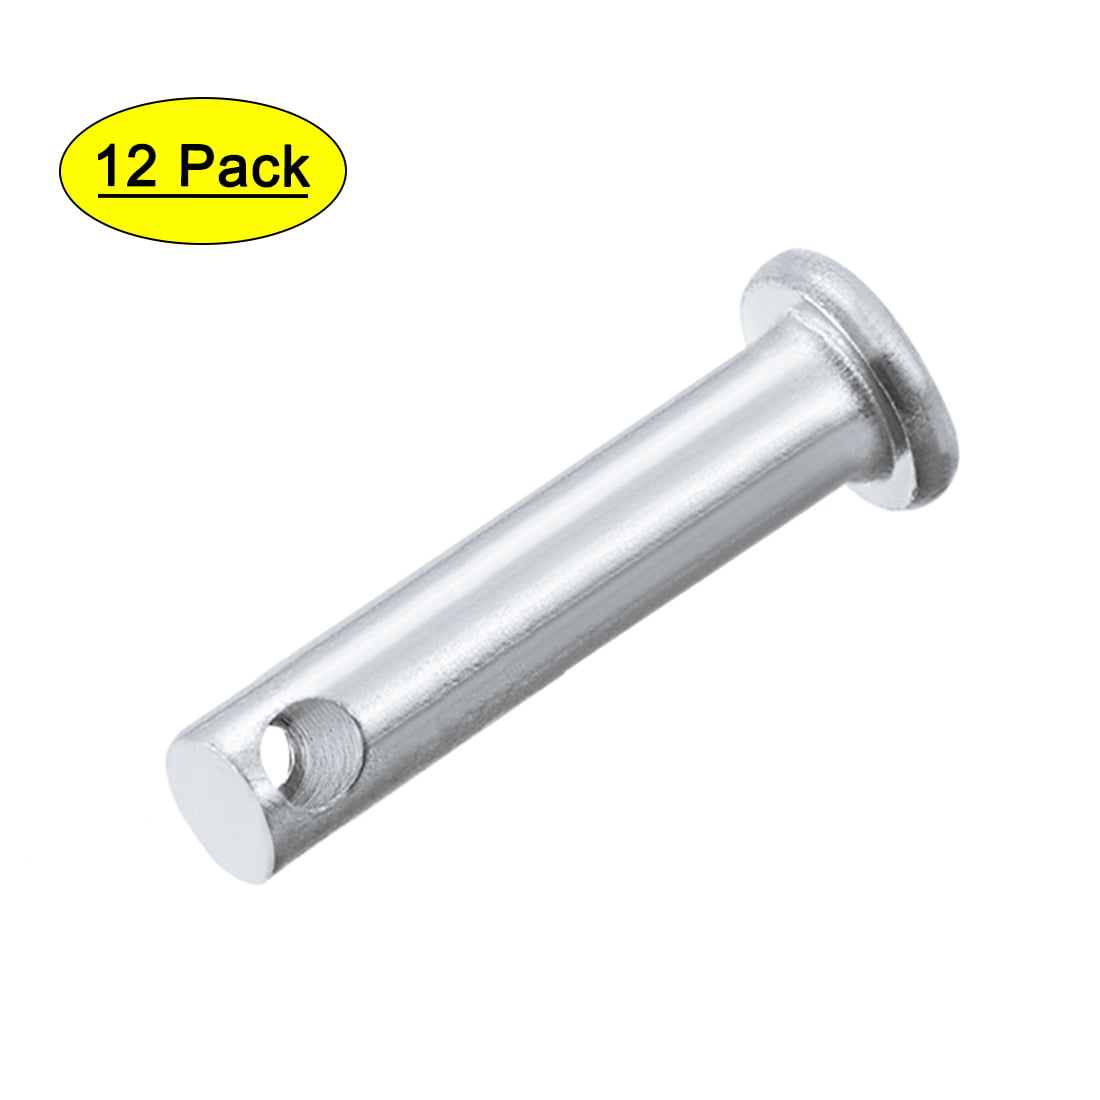 Single Hole Clevis Pins 5mm x 25mm Flat Head Zinc-Plating Solid Steel Pin 12Pcs 